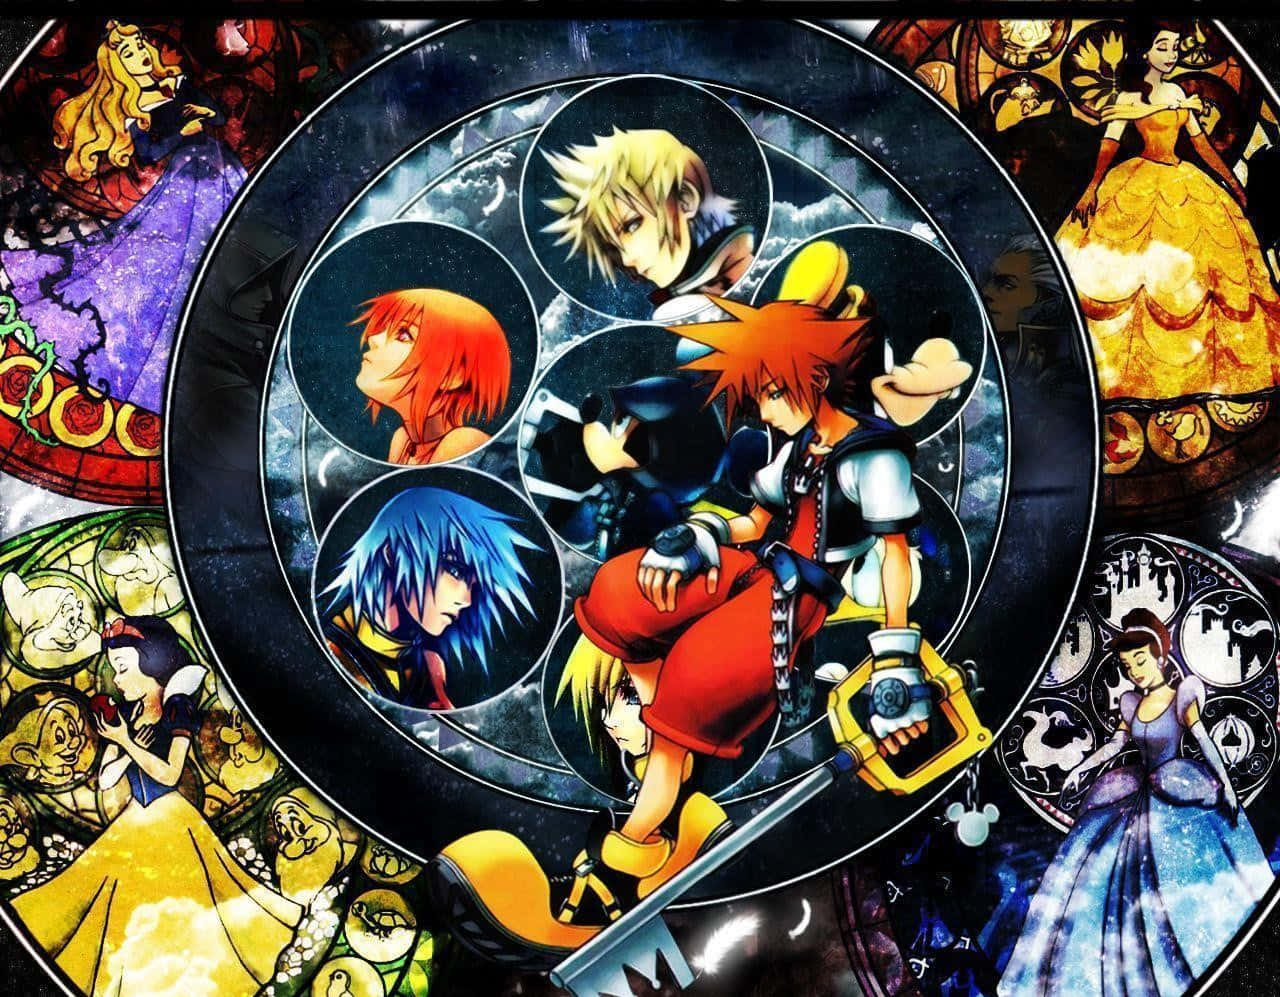 Sora wielding the iconic Keyblade in Kingdom Hearts Wallpaper